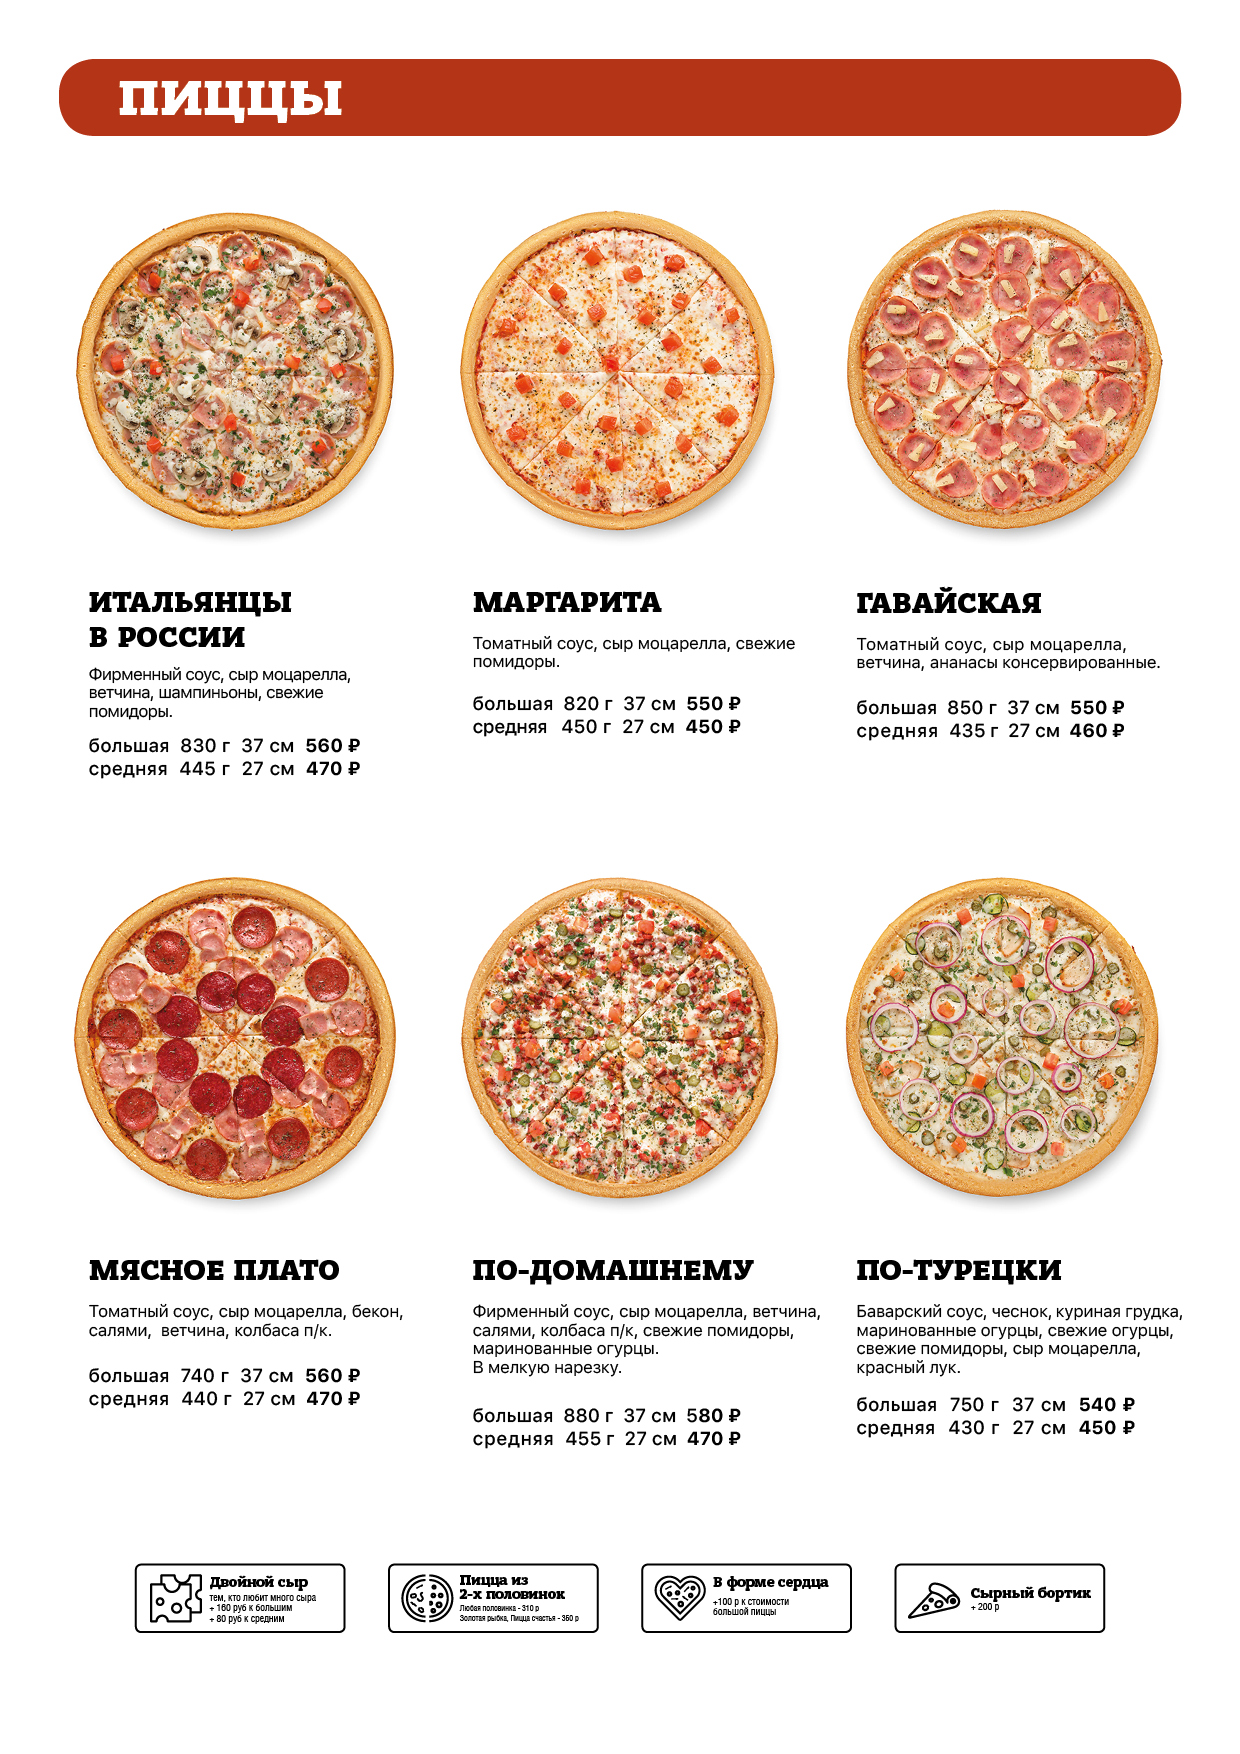 сколько калорий в пицце пепперони в одном куске фото 60